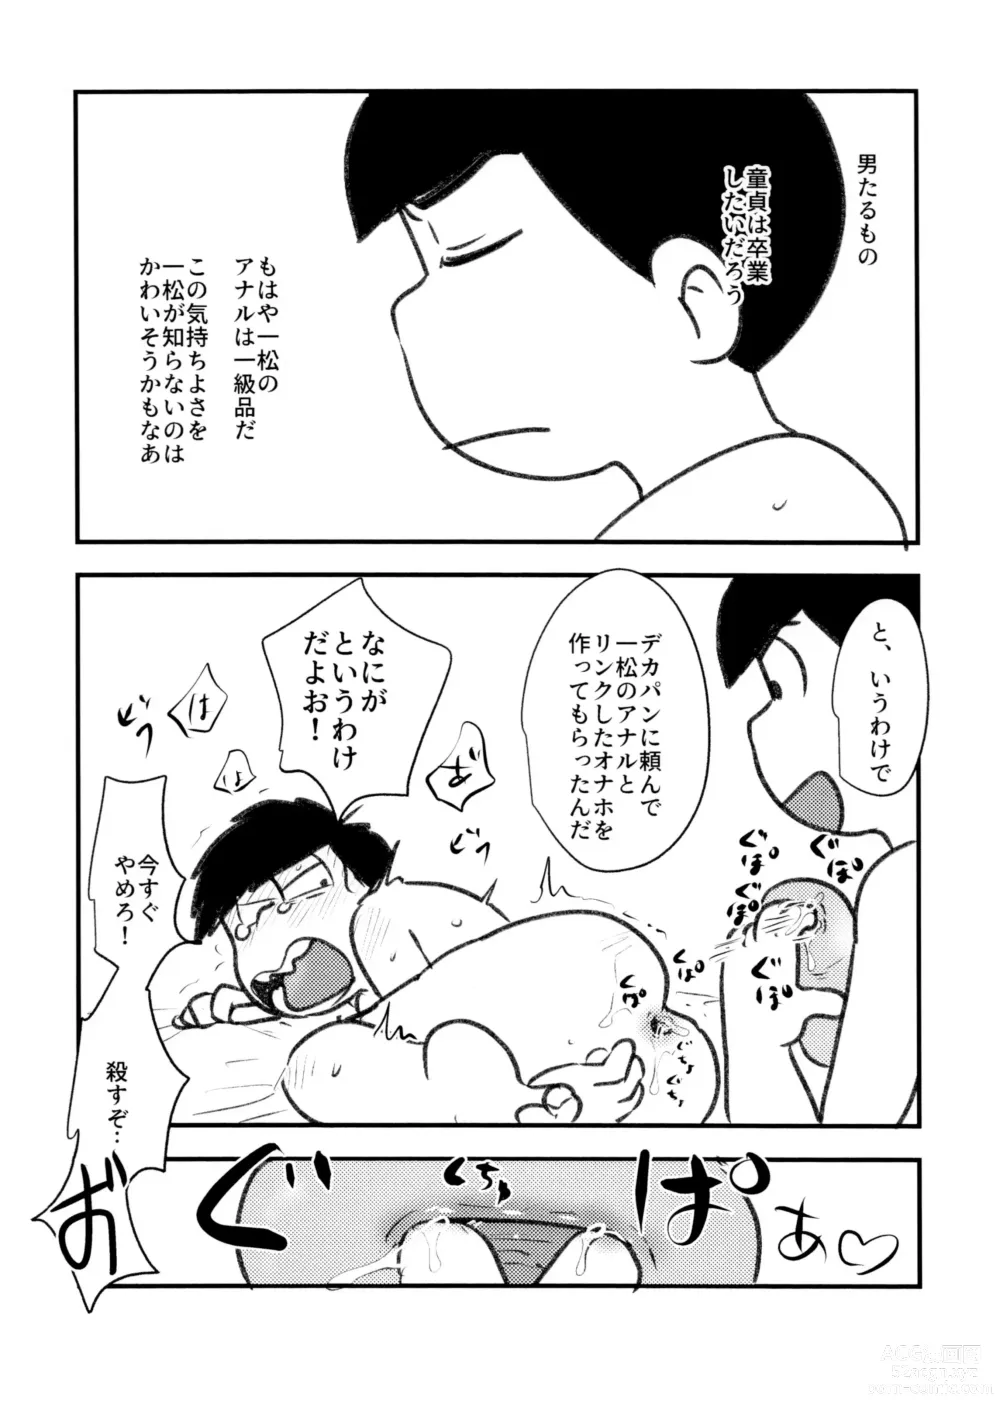 Page 9 of doujinshi Guchuguchu Nuchinuchu Mahou no Doppyun Onaho de Sotsugyou